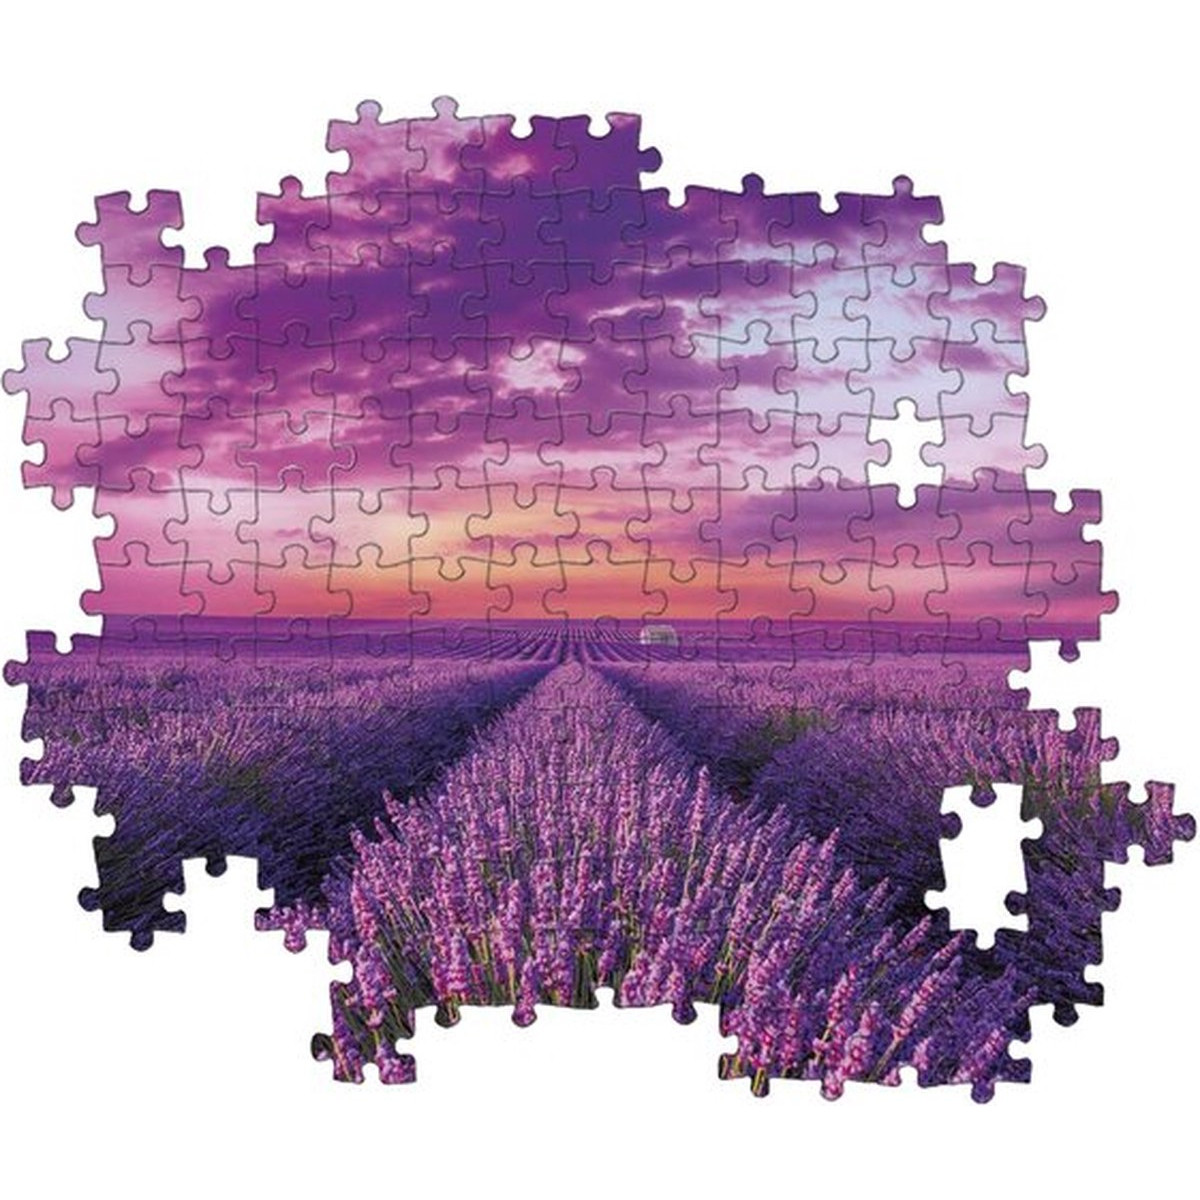 Puzzle Feld CLEMENTONI Lavendel 98450 (1000 Teile)